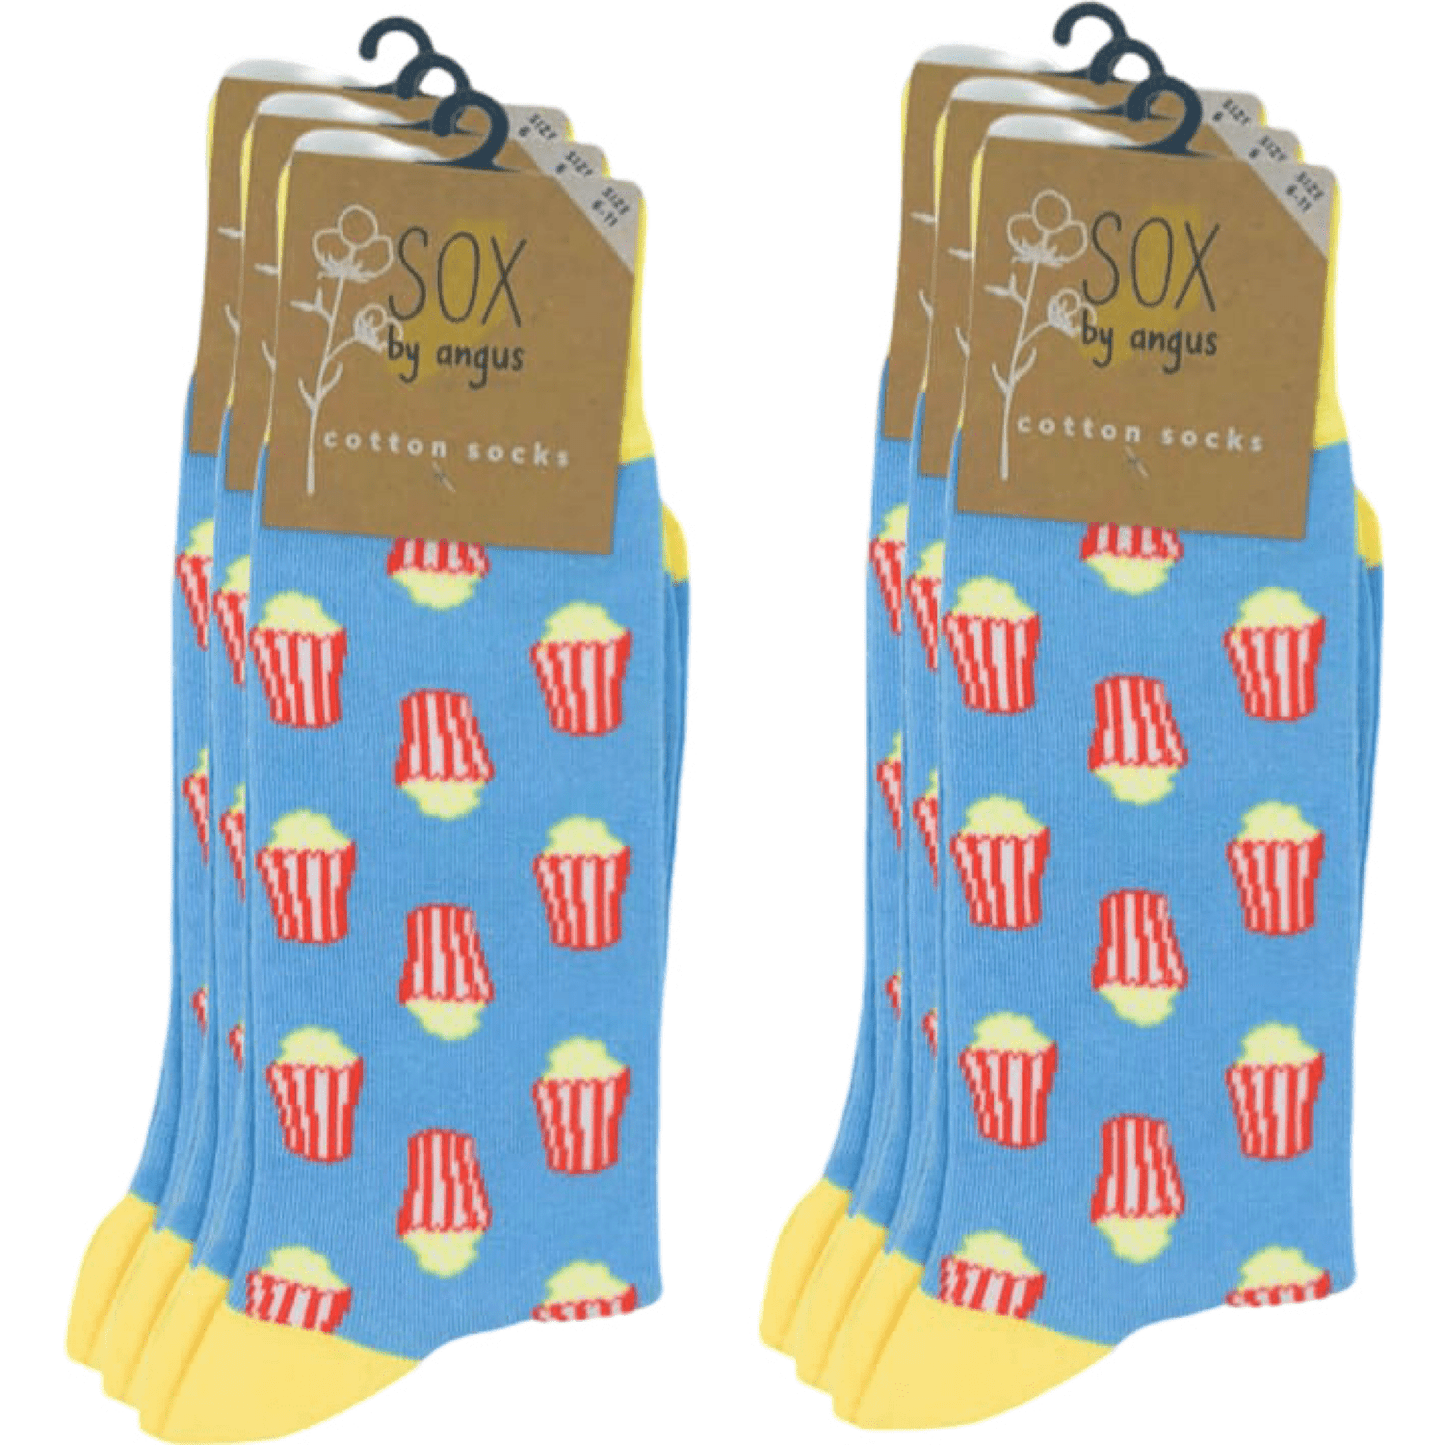 Popcorn Socks